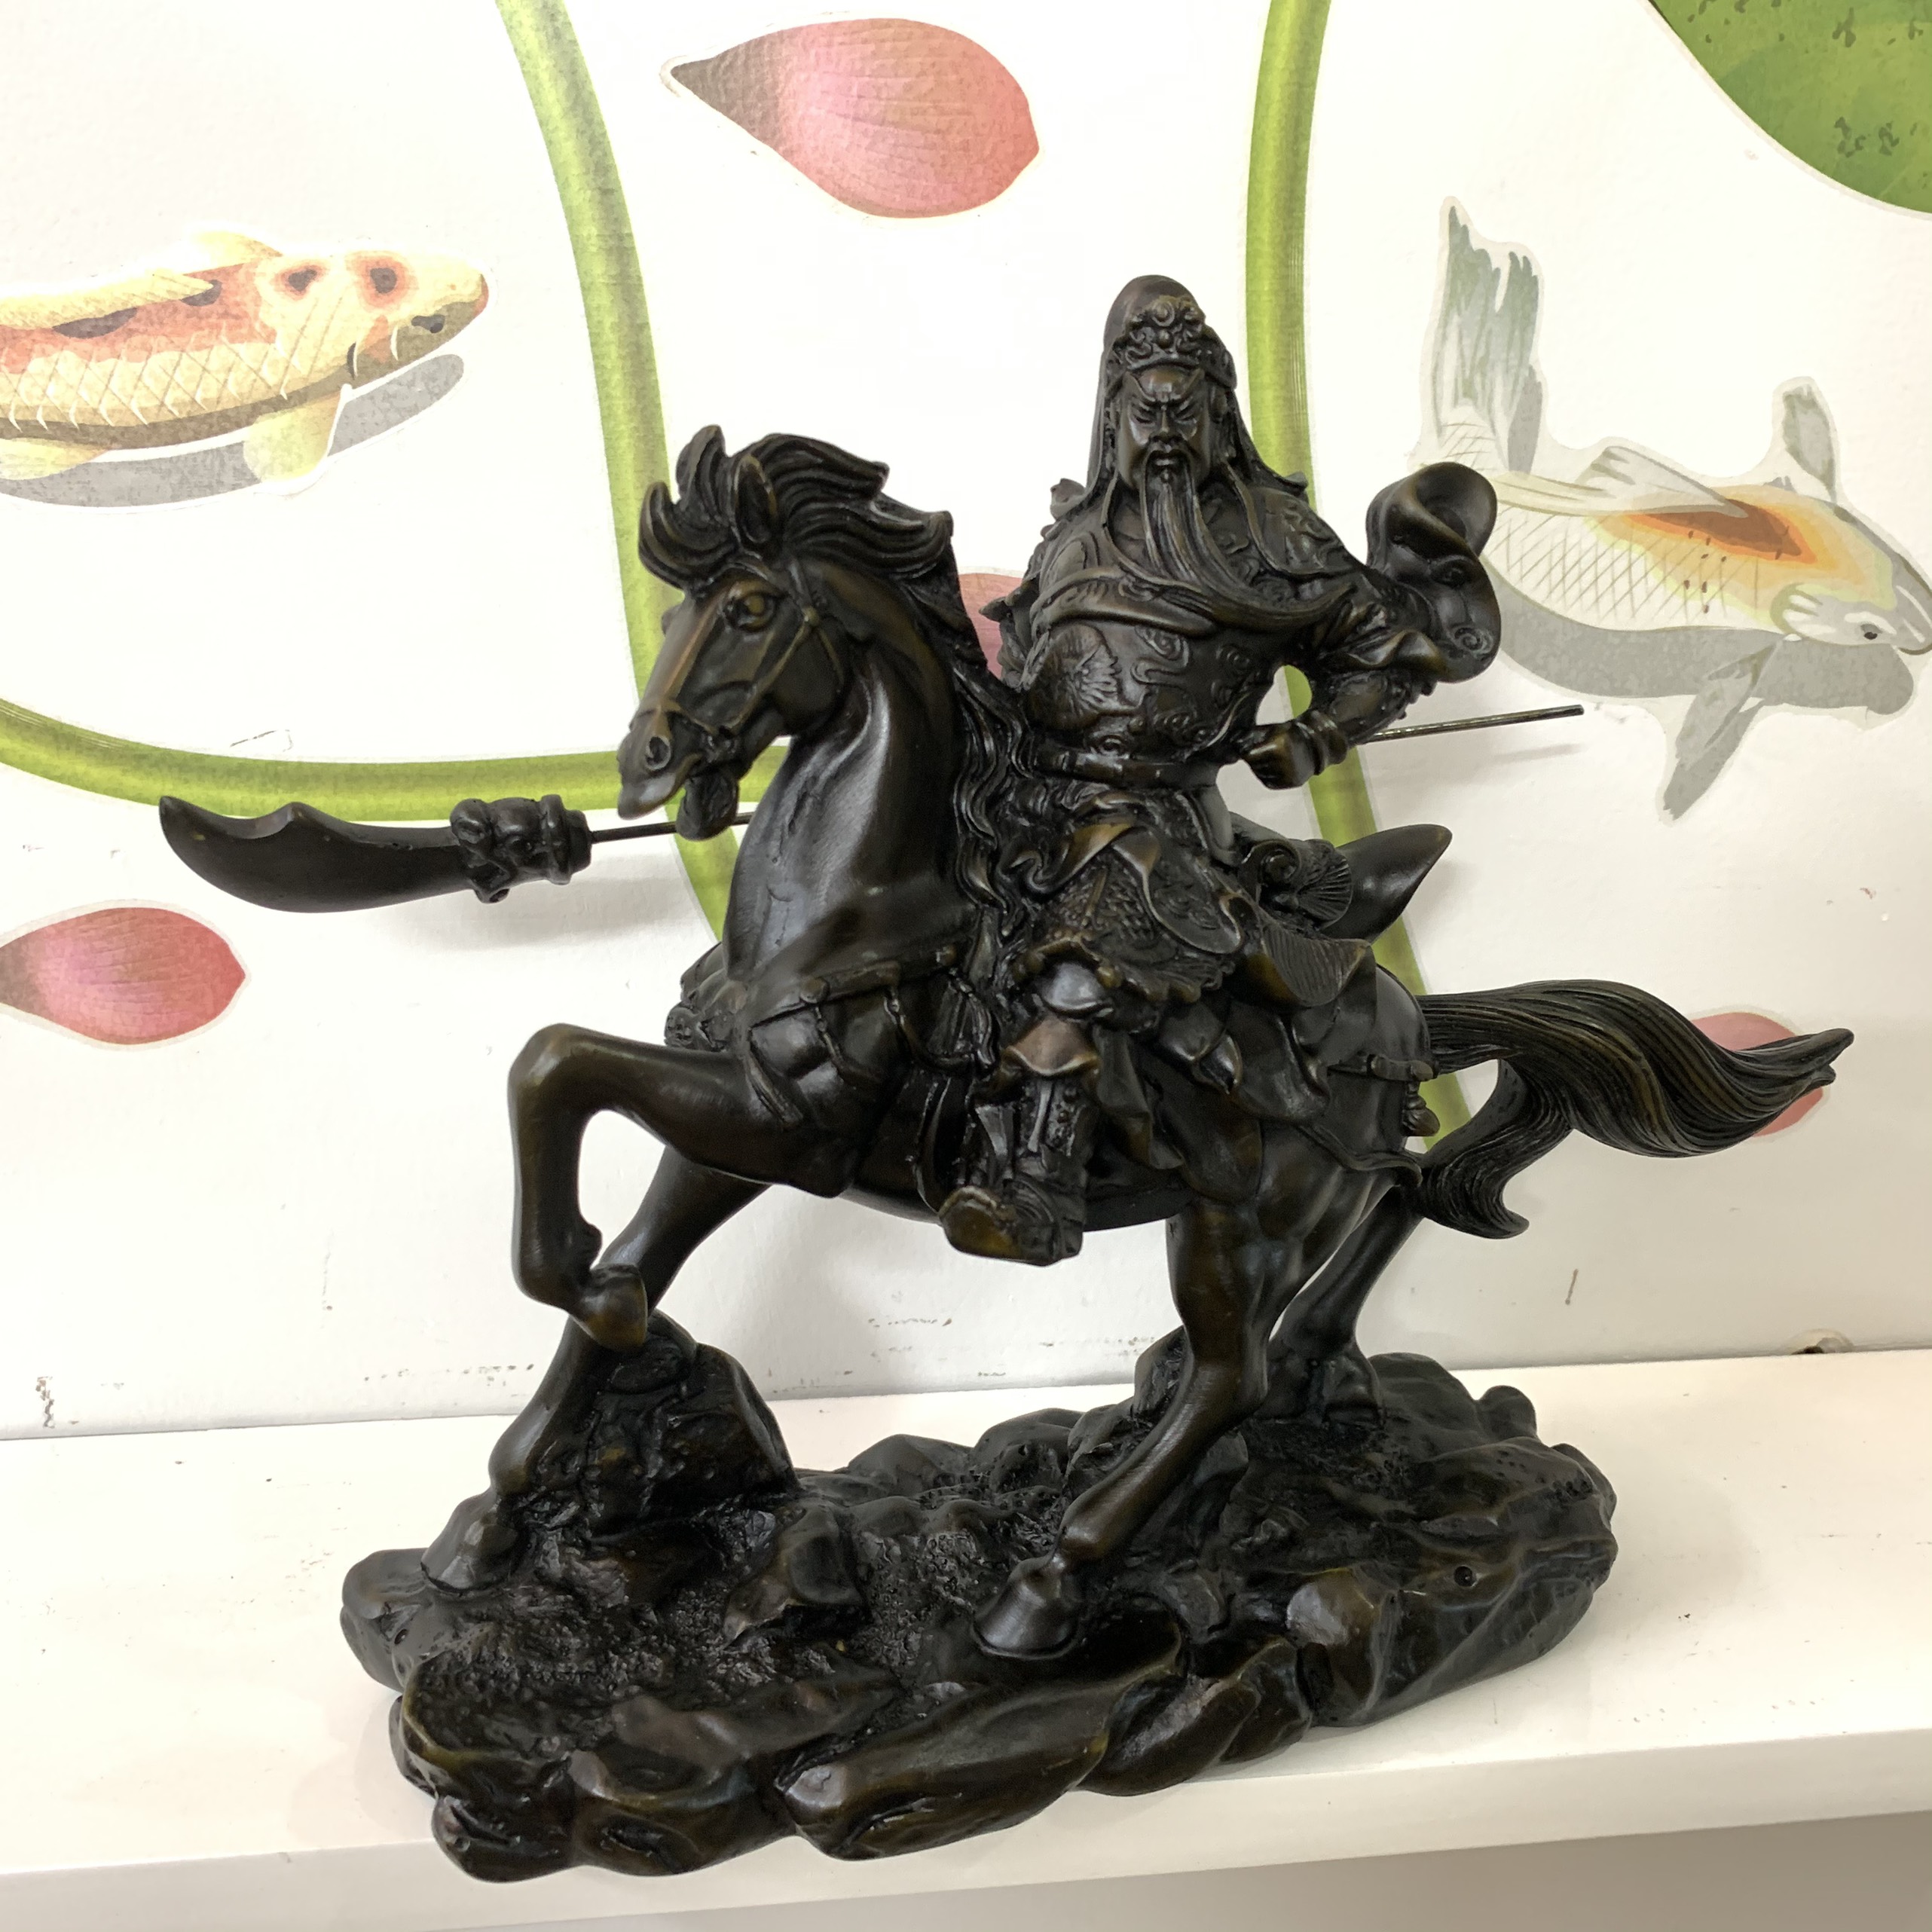 Tượng đá Quan Công cầm đao cưỡi ngựa phong thủy - Dài 25cm - Màu nâu đen - Đá composite